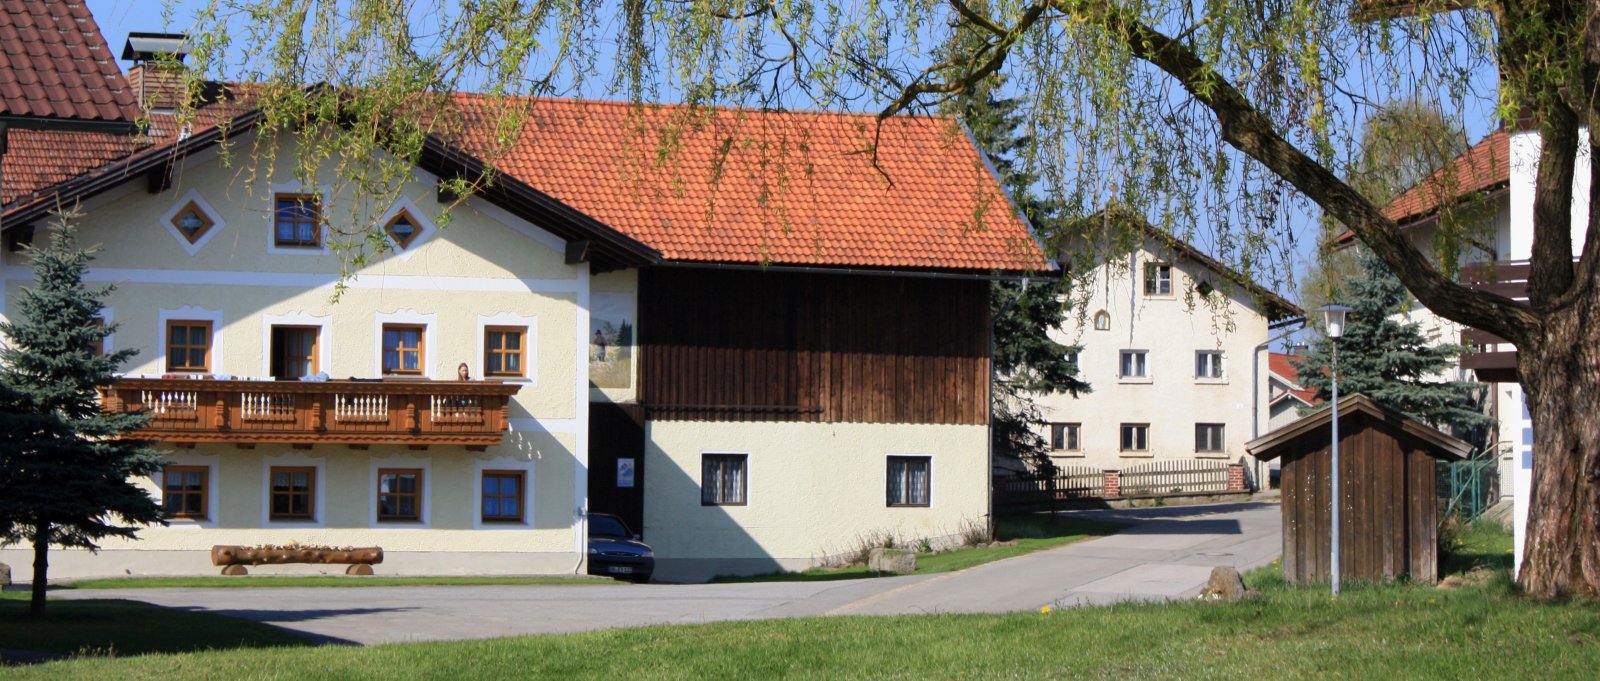 Ferienhof Kopp in Altenmais – Kontakt